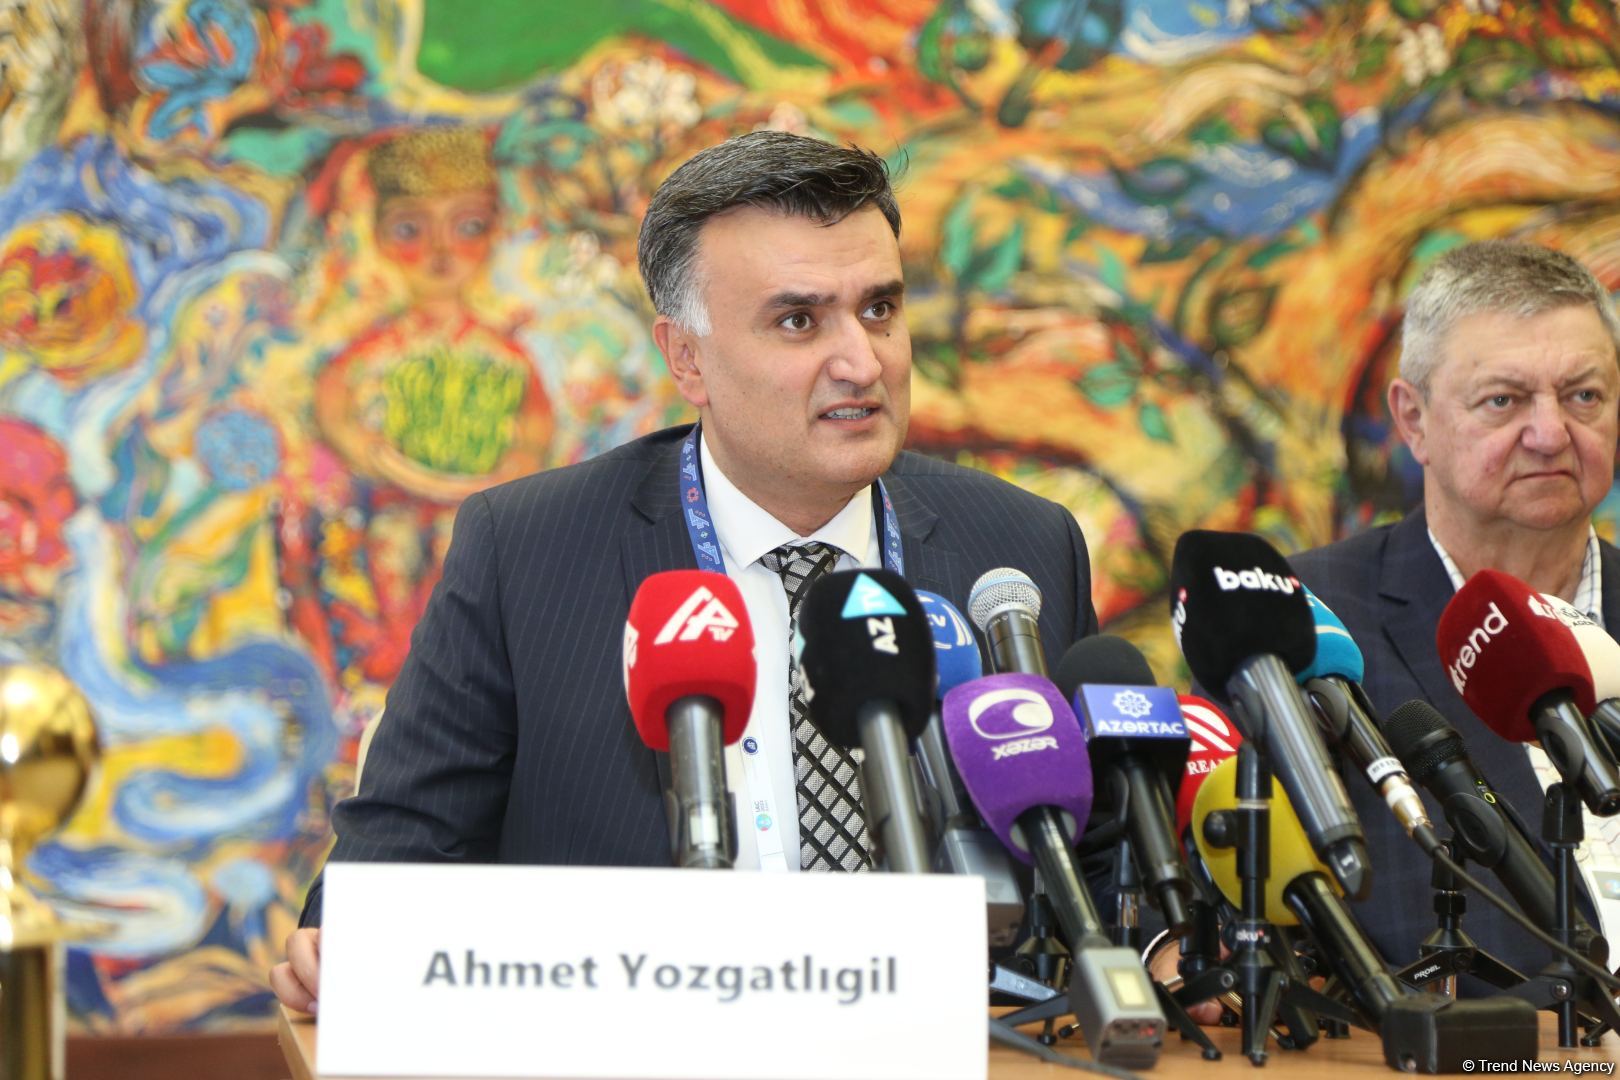 Азербайджан и Турция могут сотрудничать в области низкоорбитальных спутников - замминистра (Эксклюзив)